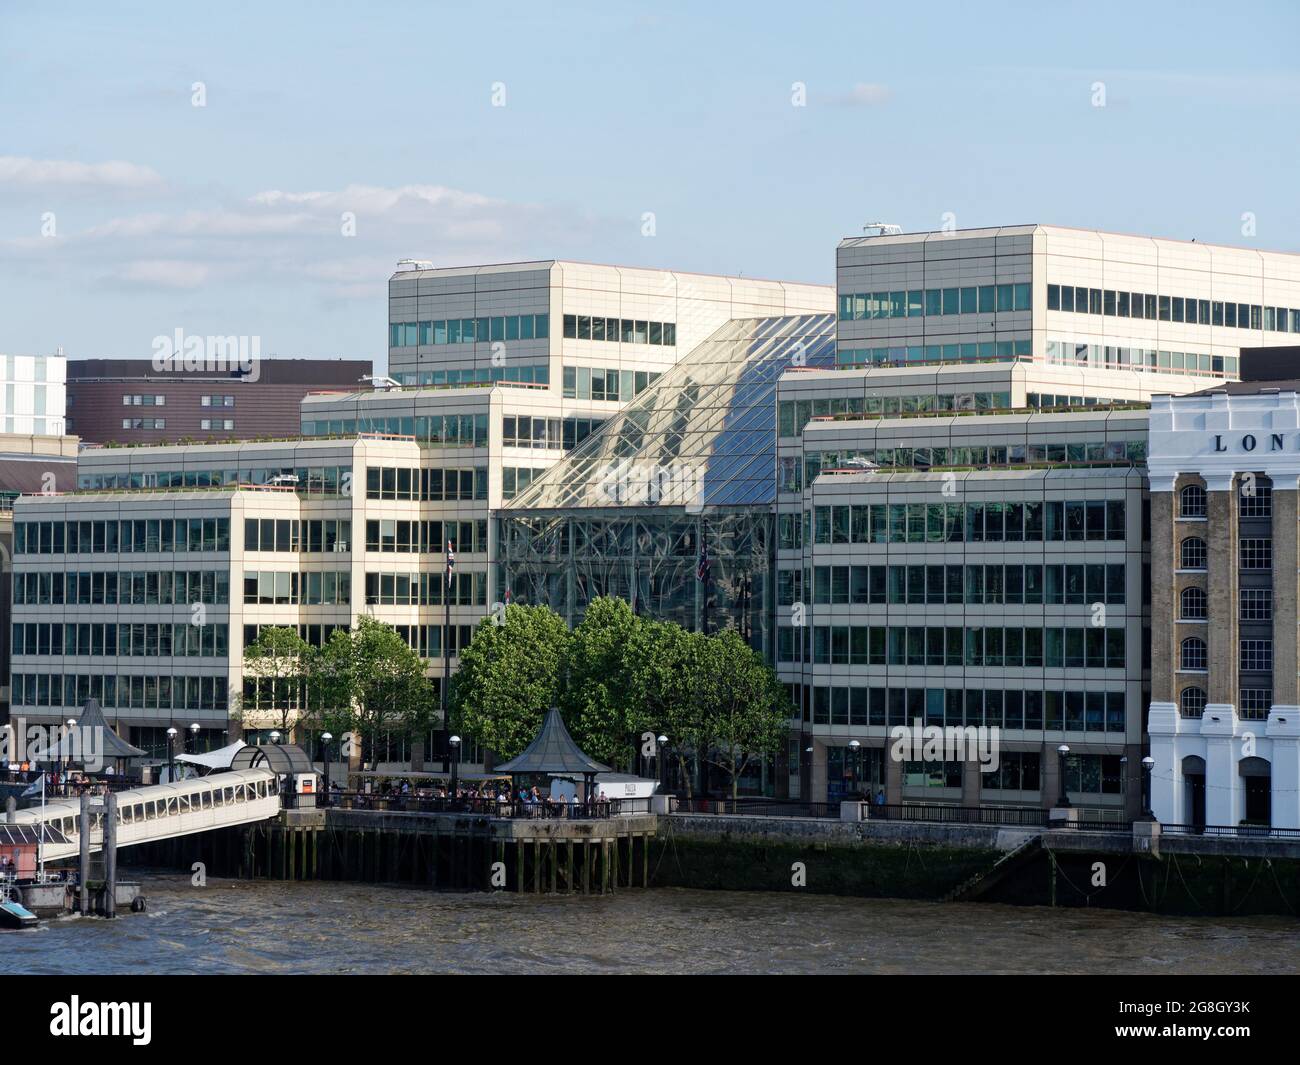 Londra, Greater London, England, giugno 12 2021: Vista verso un molo o molo e un edificio di vetro sulla riva sud del fiume tamigi Foto Stock